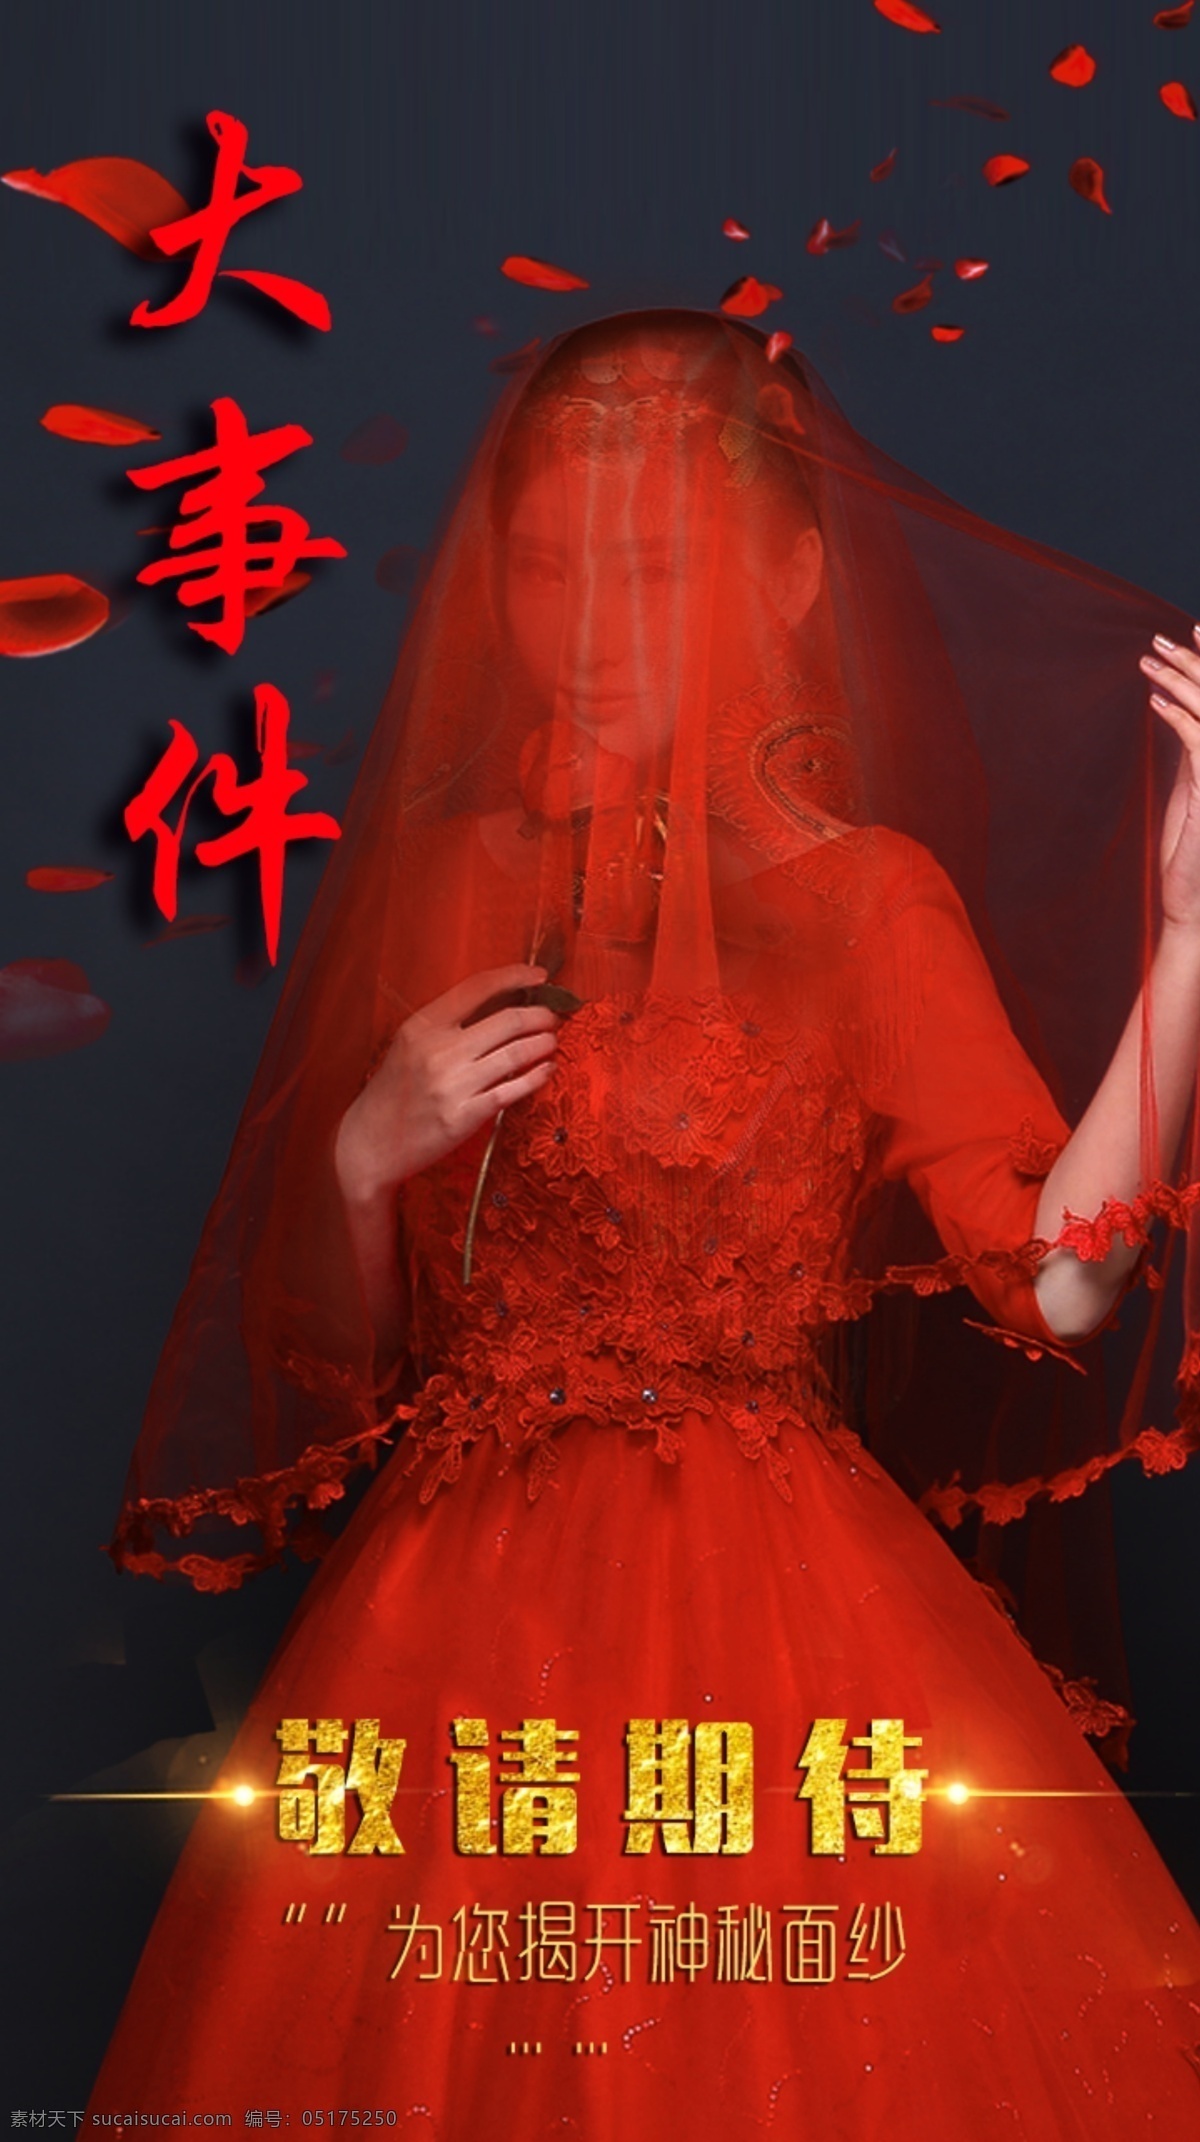 活动大事件 大事件 婚纱 活动 海报 宣传 红色